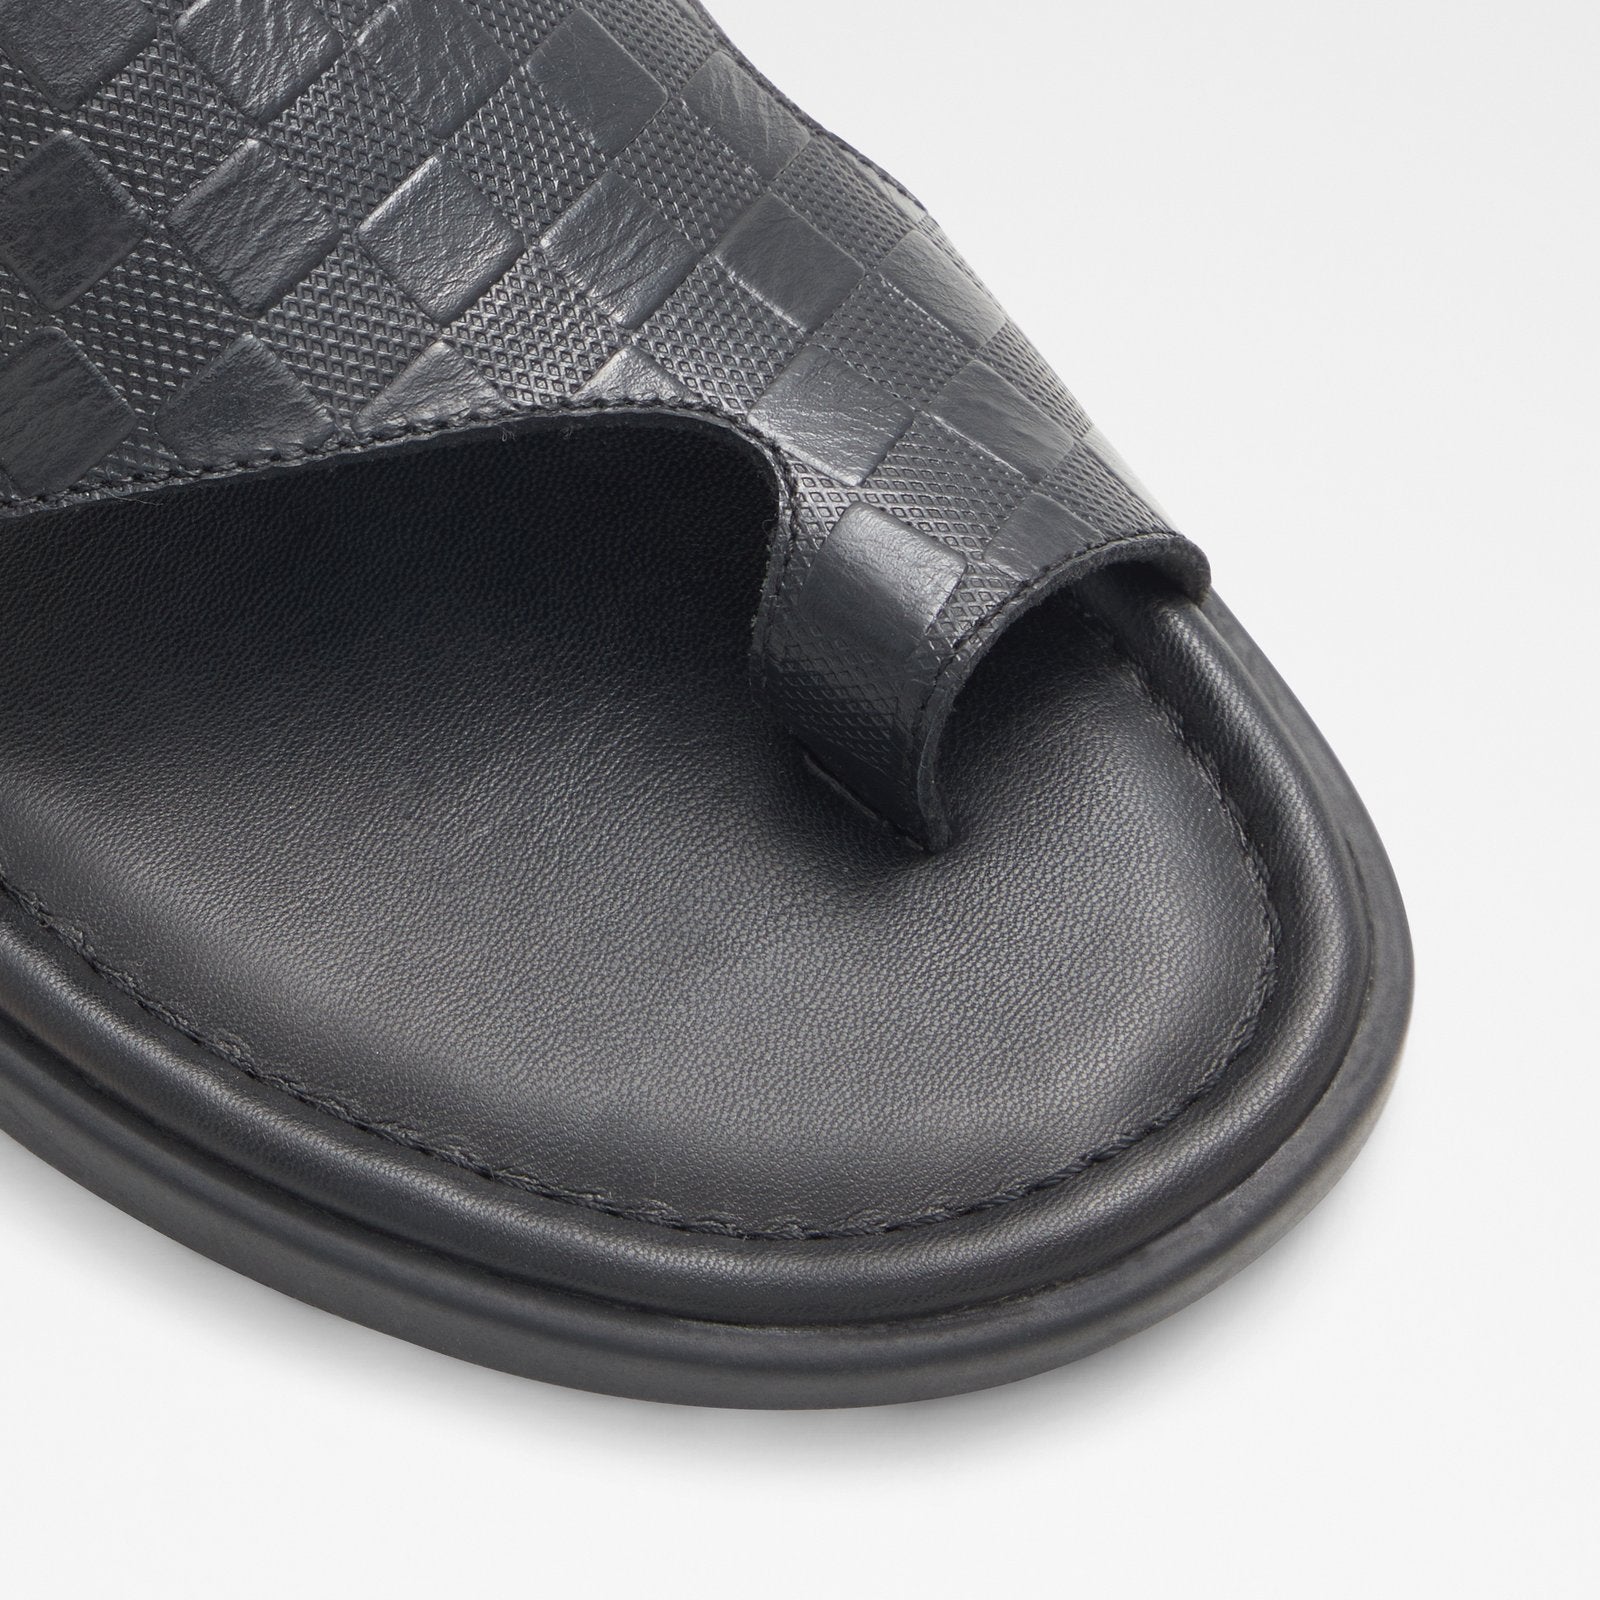 Seif / Flat Sandals